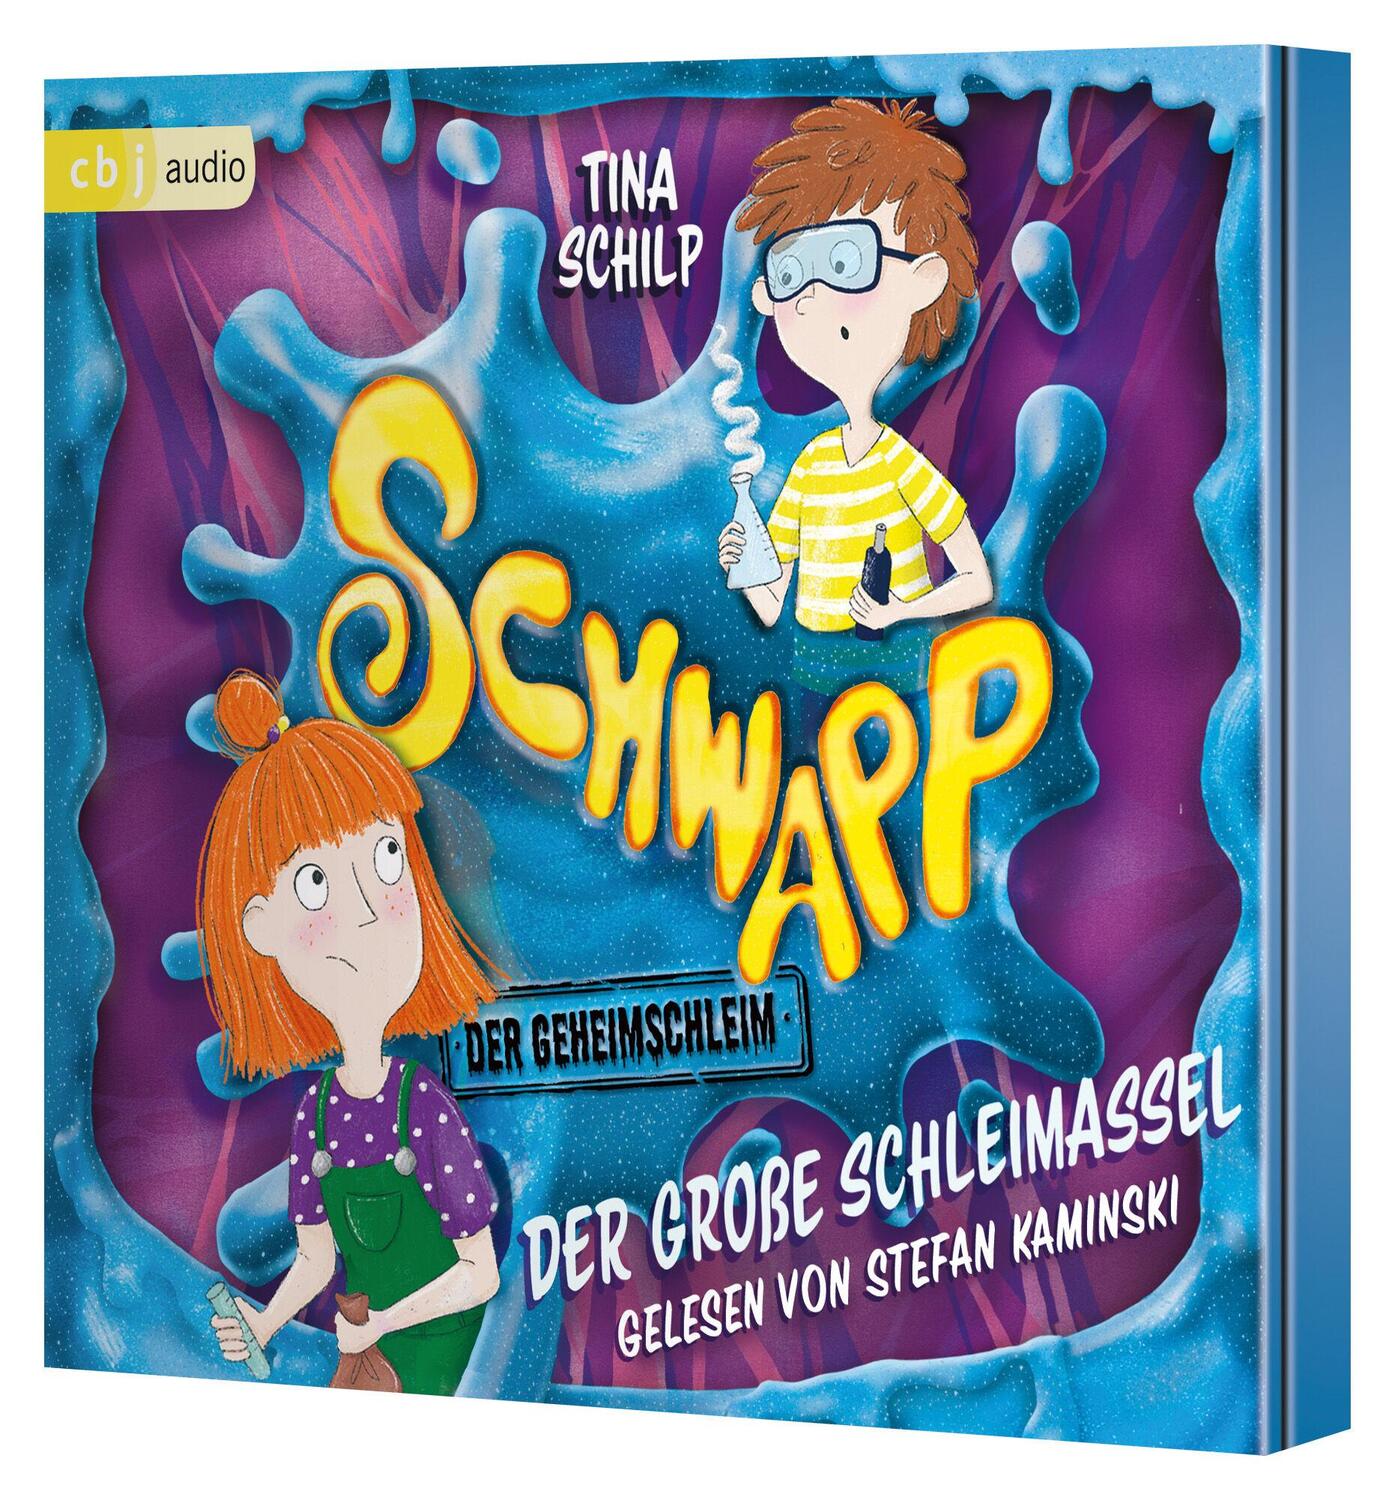 Bild: 9783837167443 | Schwapp, der Geheimschleim - Der große Schleimassel | Tina Schilp | CD